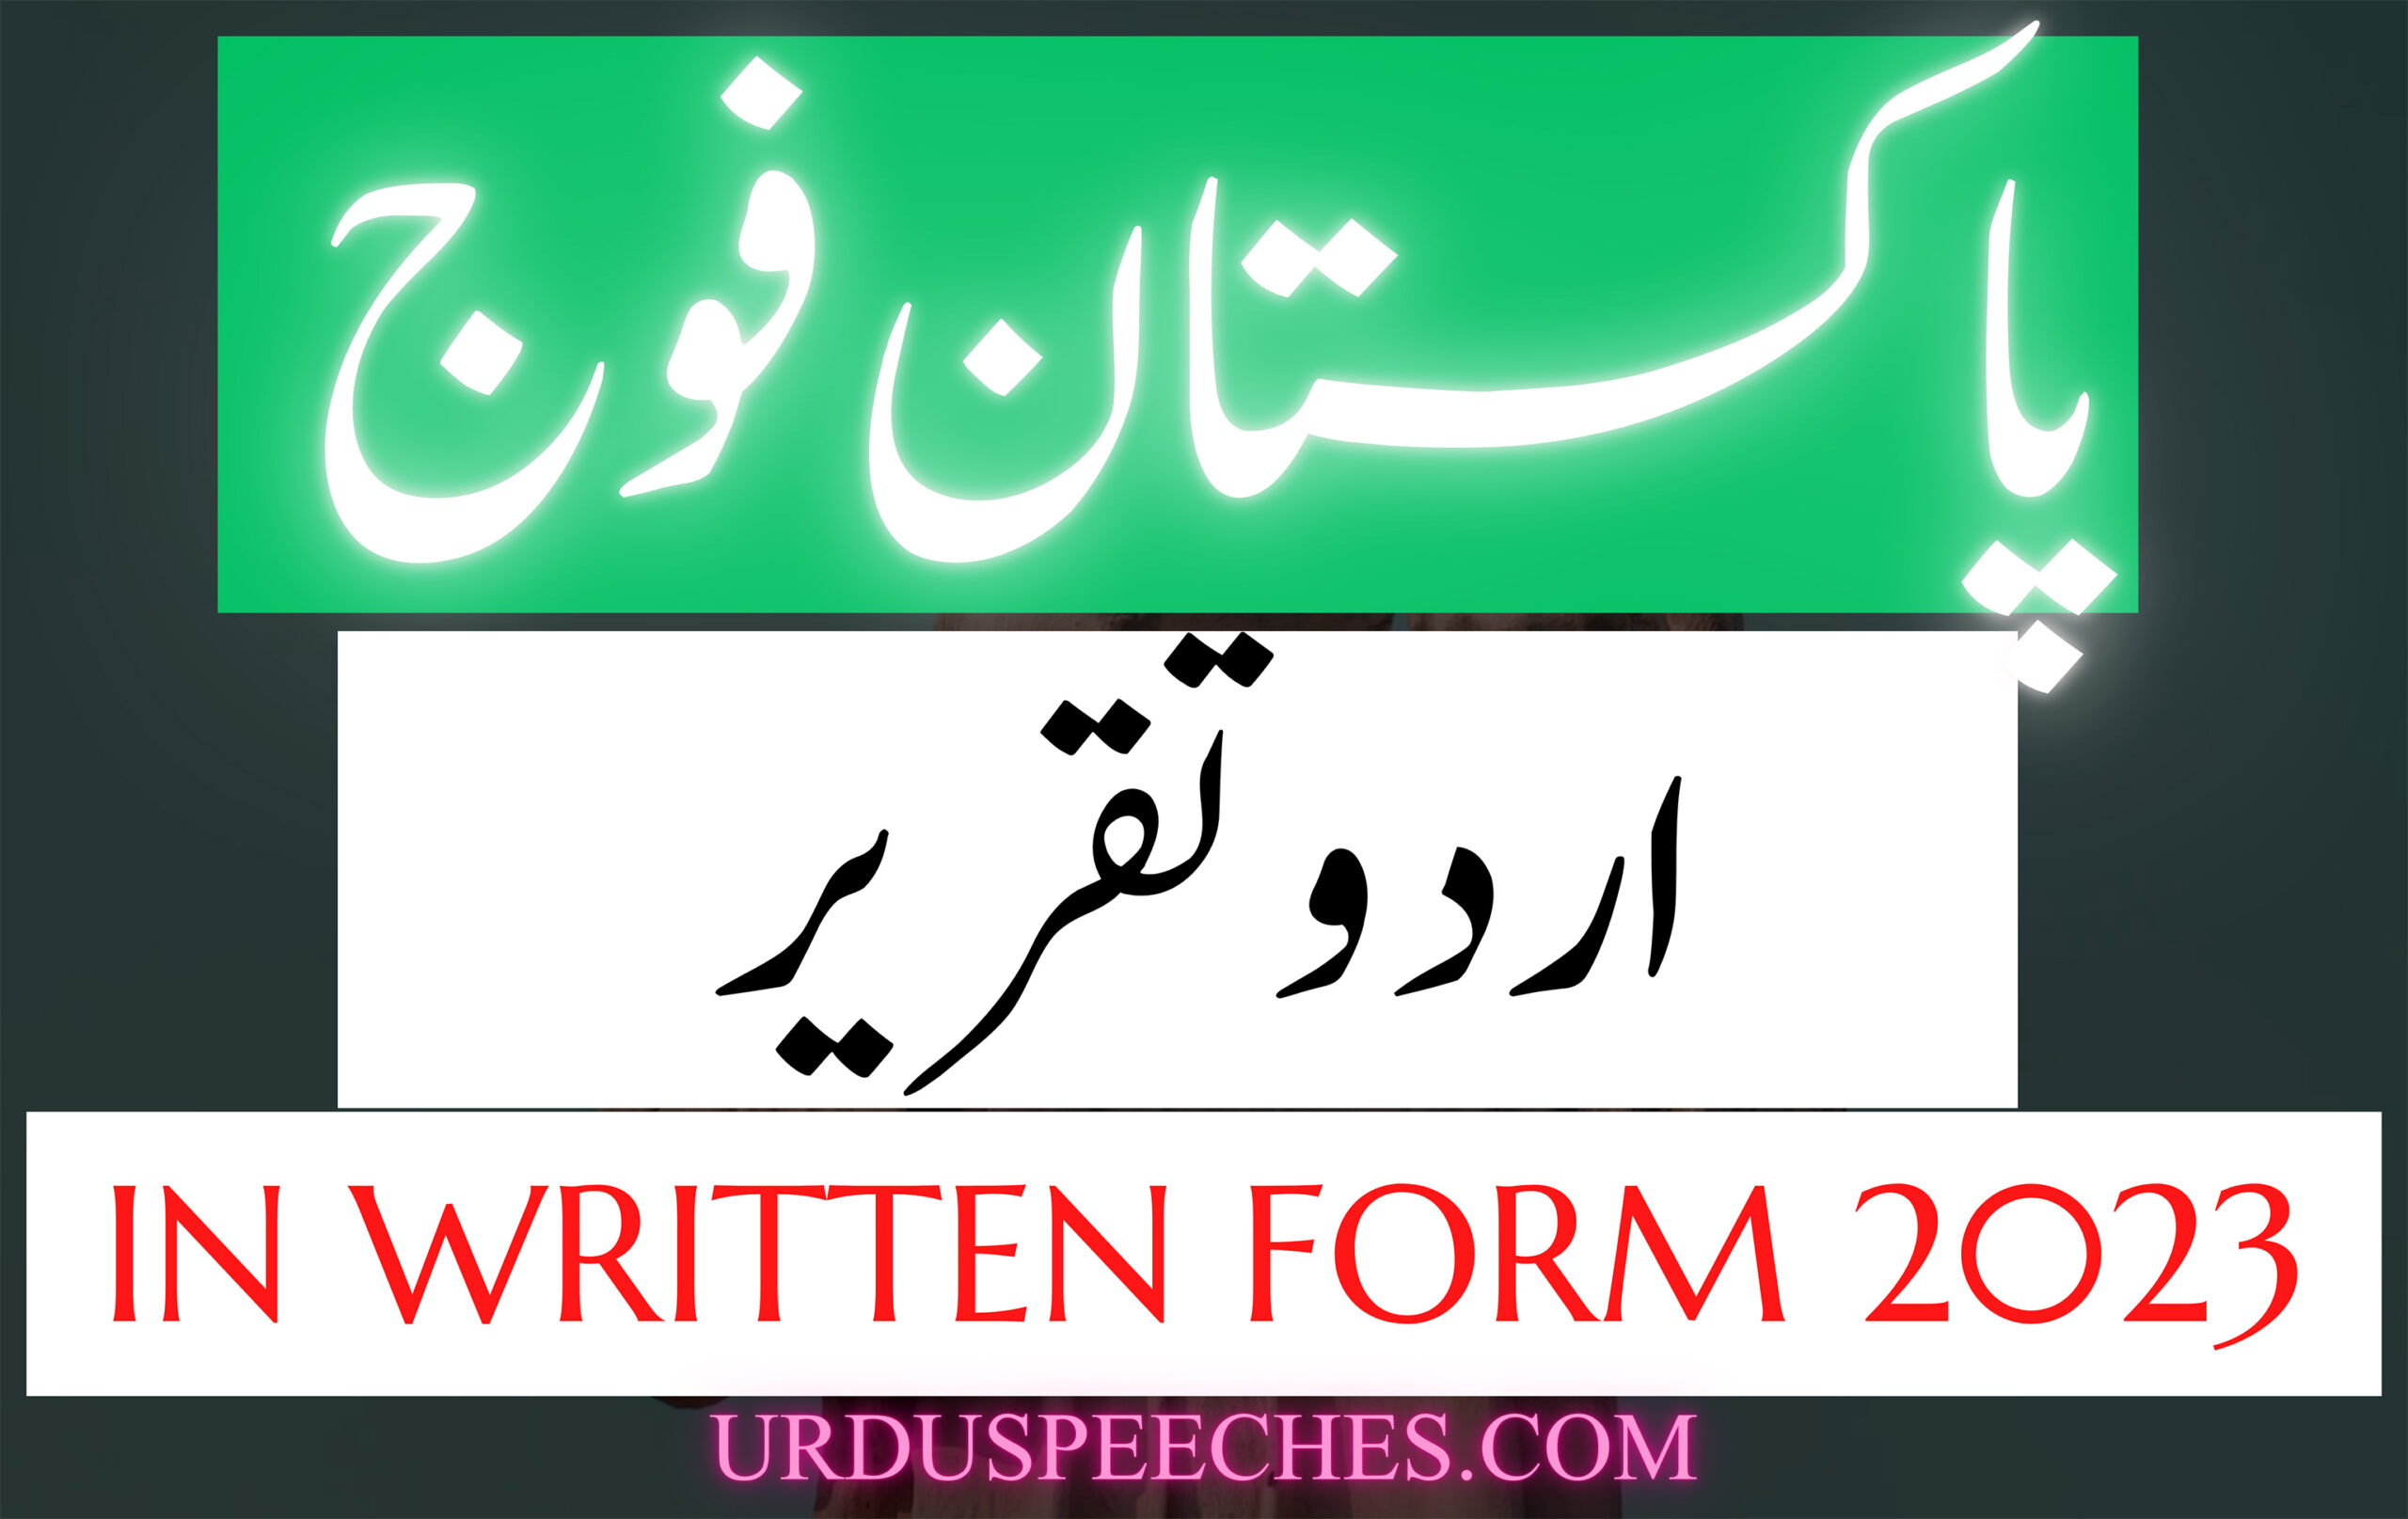 Urdu Speech on Pakistan Army in Written Form